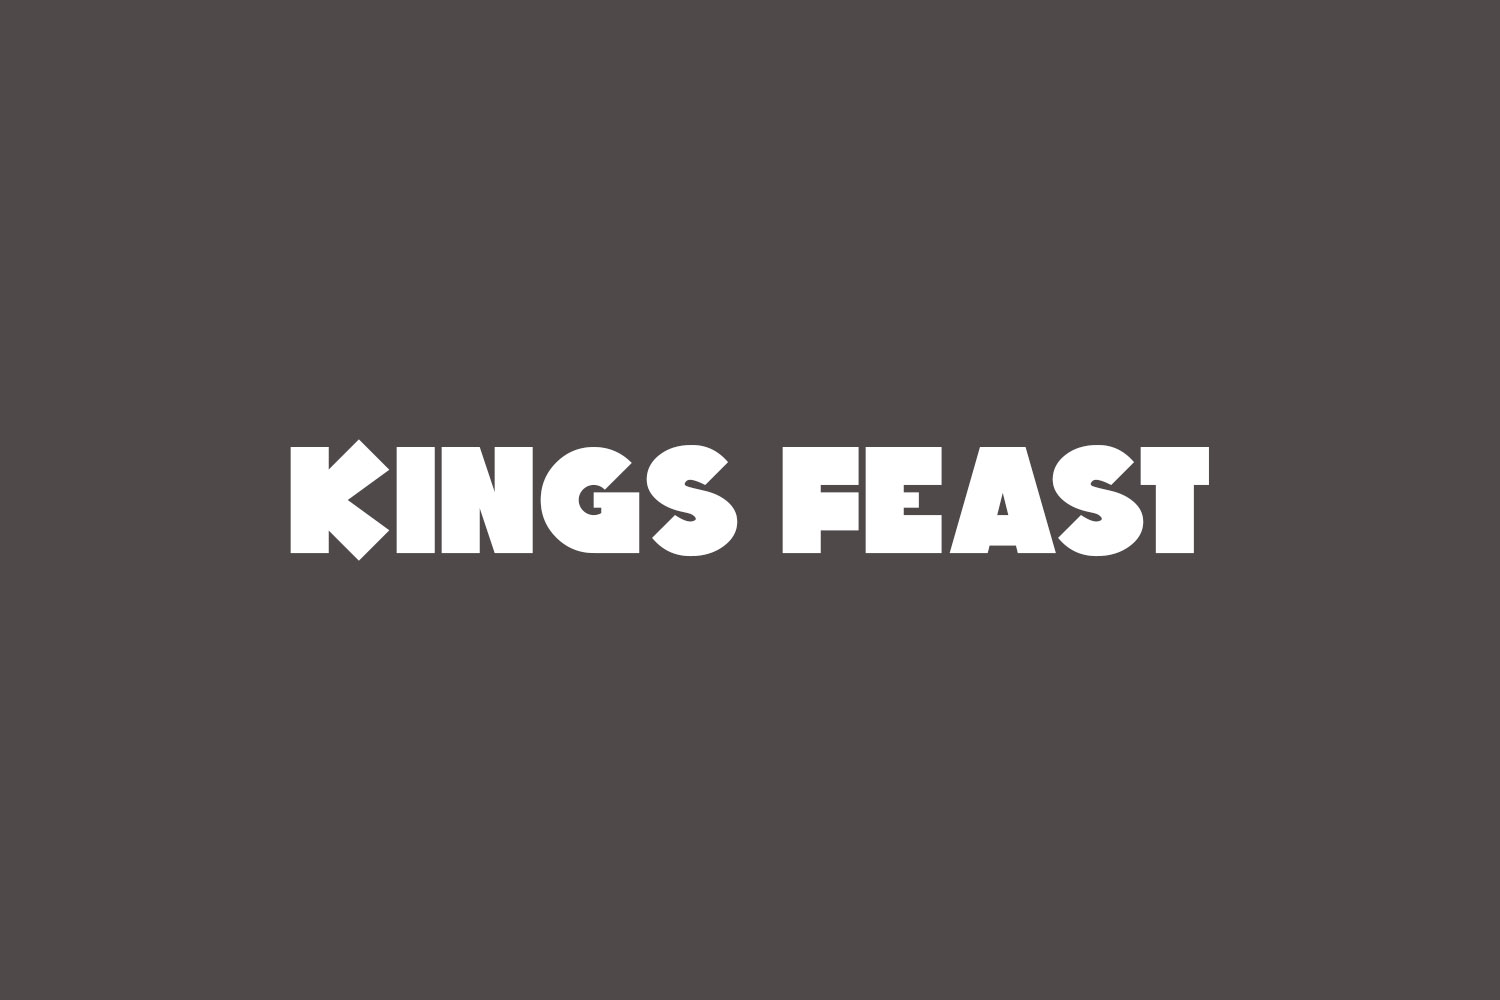 Kings Feast Free Font